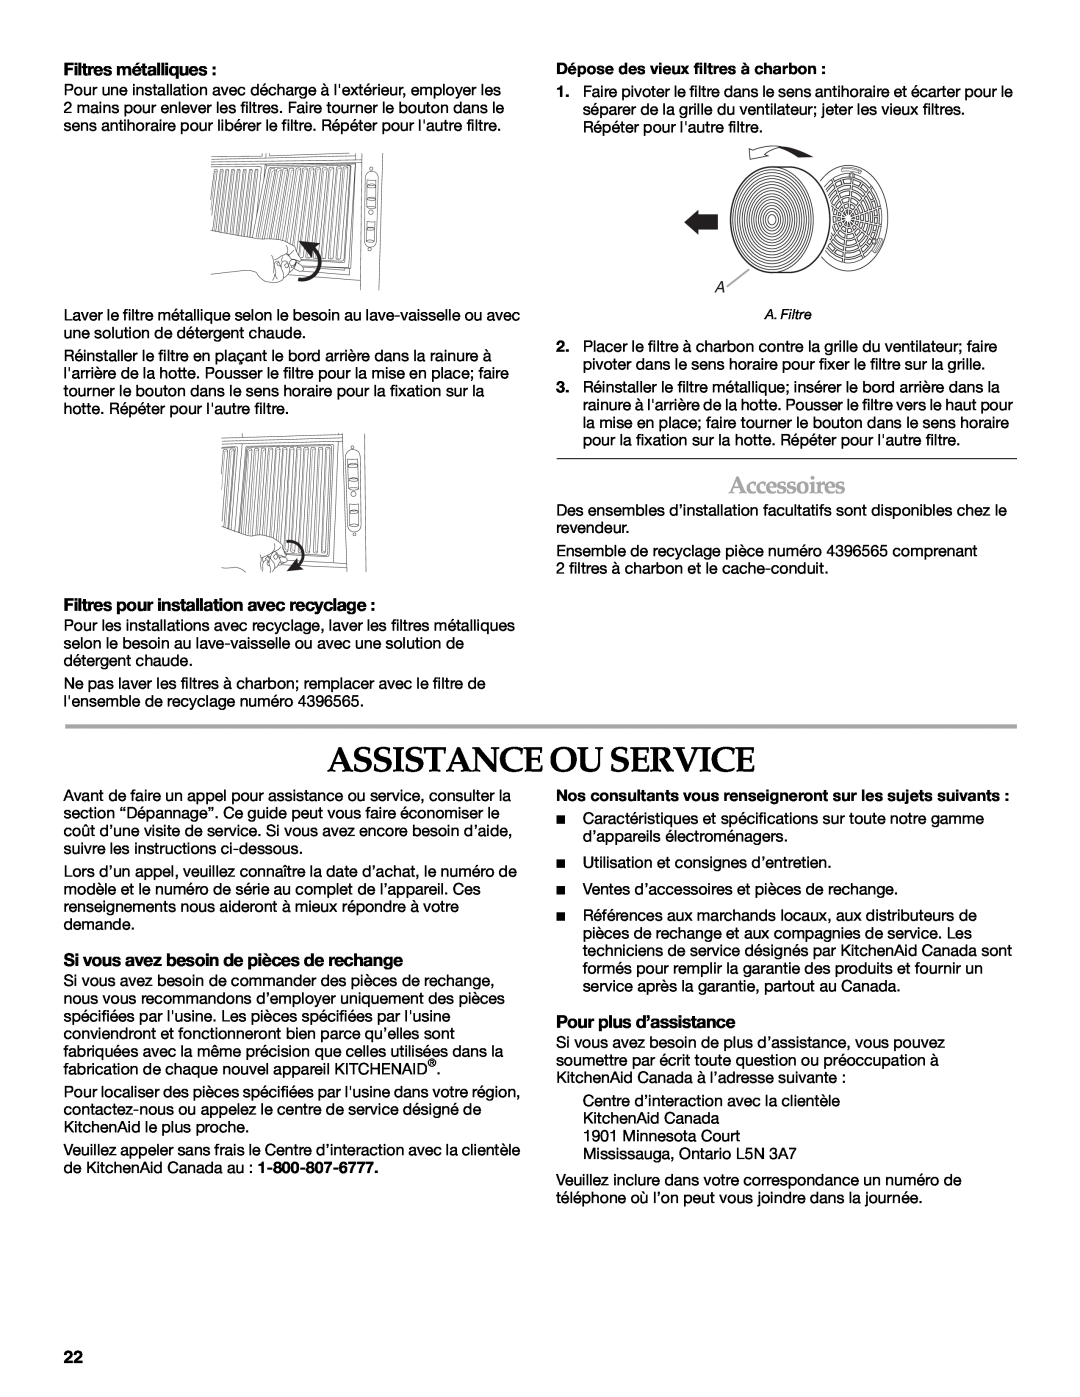 KitchenAid 2005 Assistance Ou Service, Accessoires, Filtres métalliques, Filtres pour installation avec recyclage 